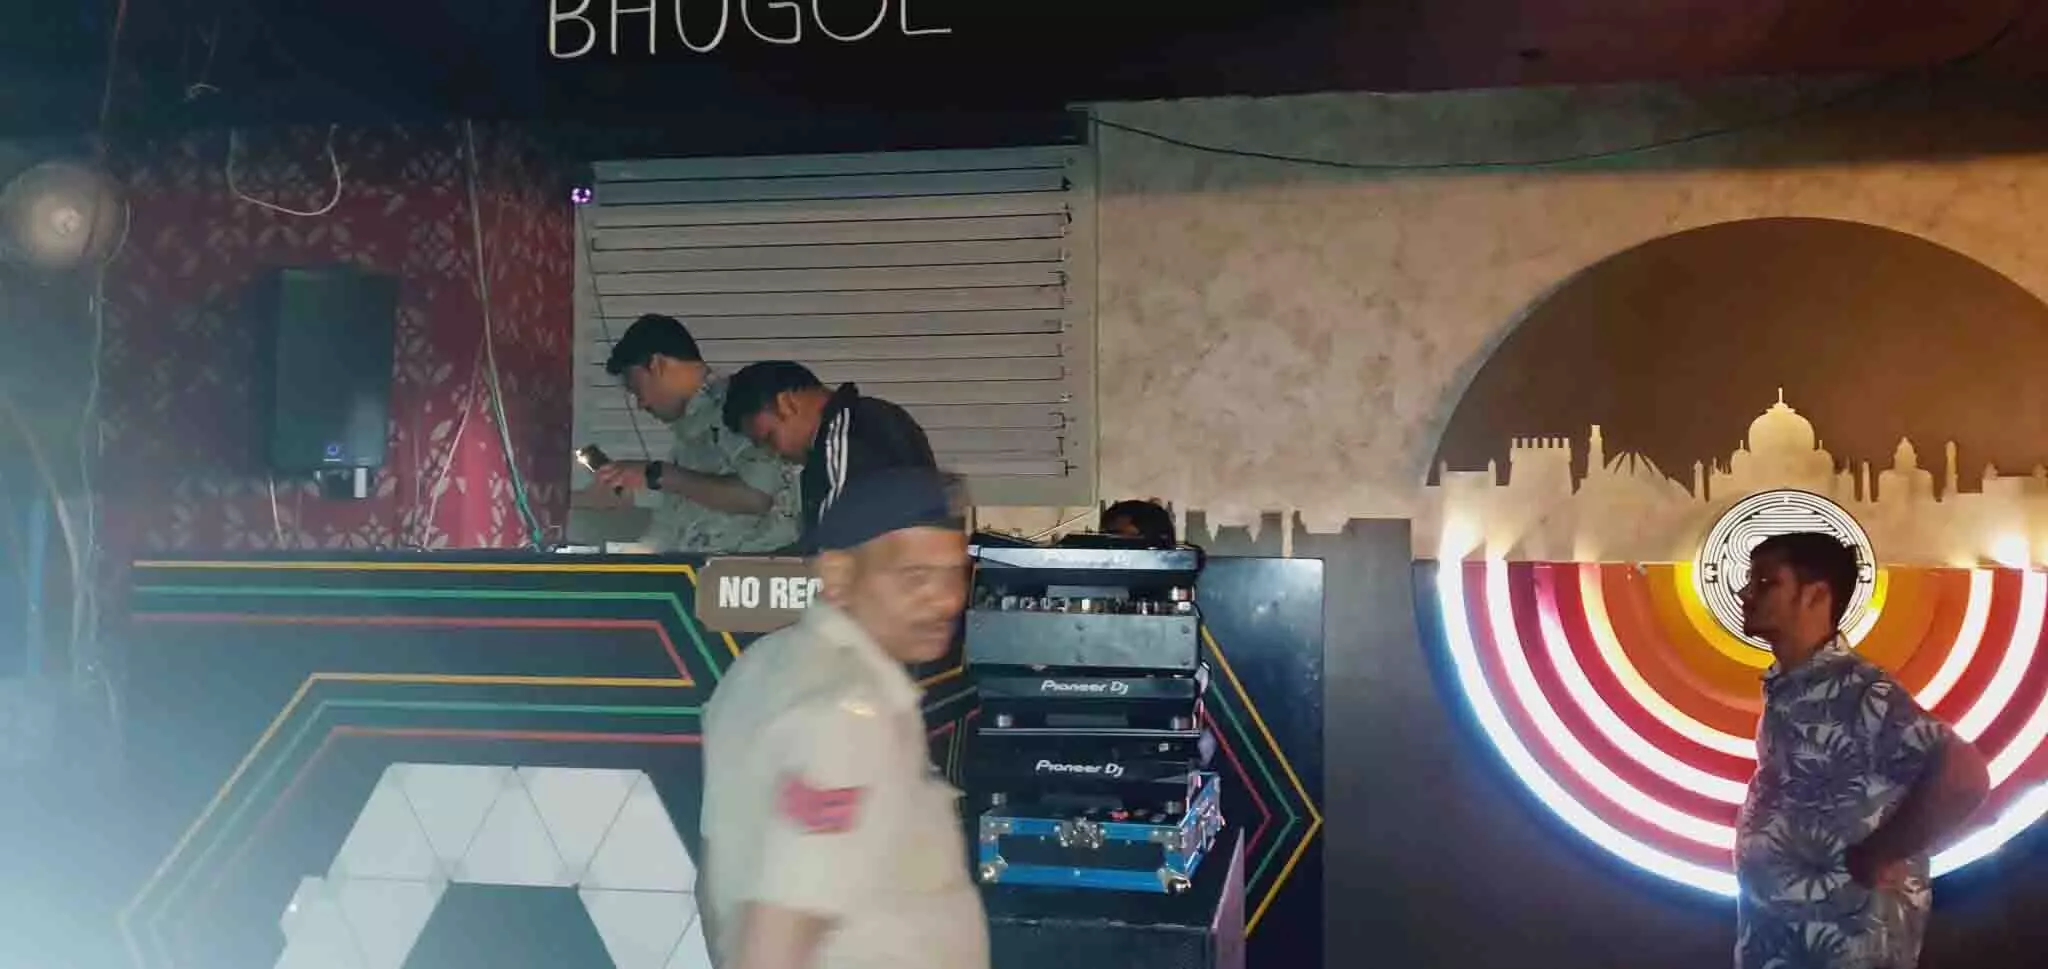 मैग्नेटो मॉल के क्लब में पुलिस ने मारी रेड, जांच जारी